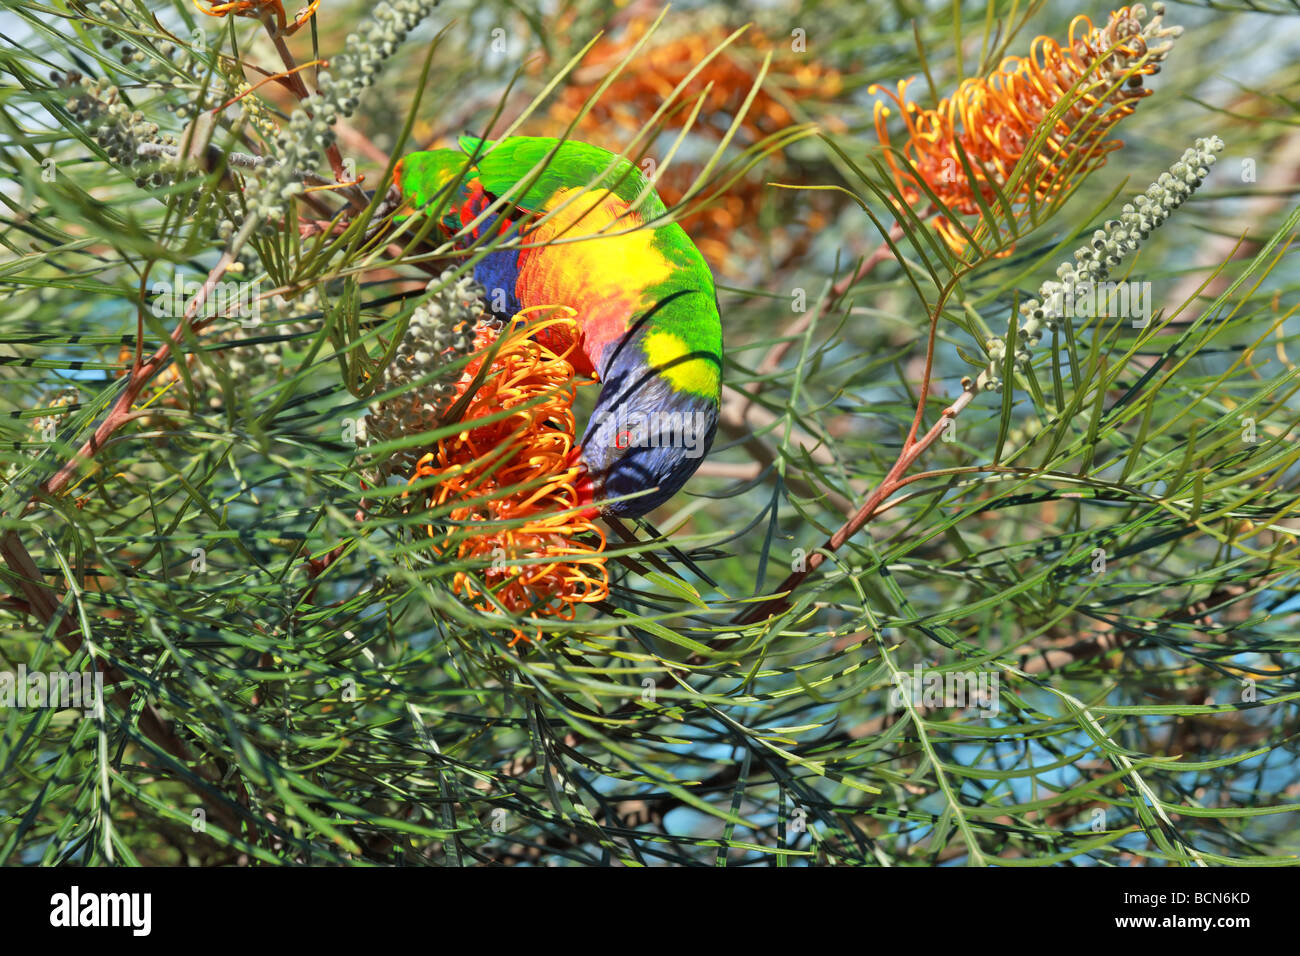 Australian Rainbow Lorikeet feeding on nectar in a tree Stock Photo